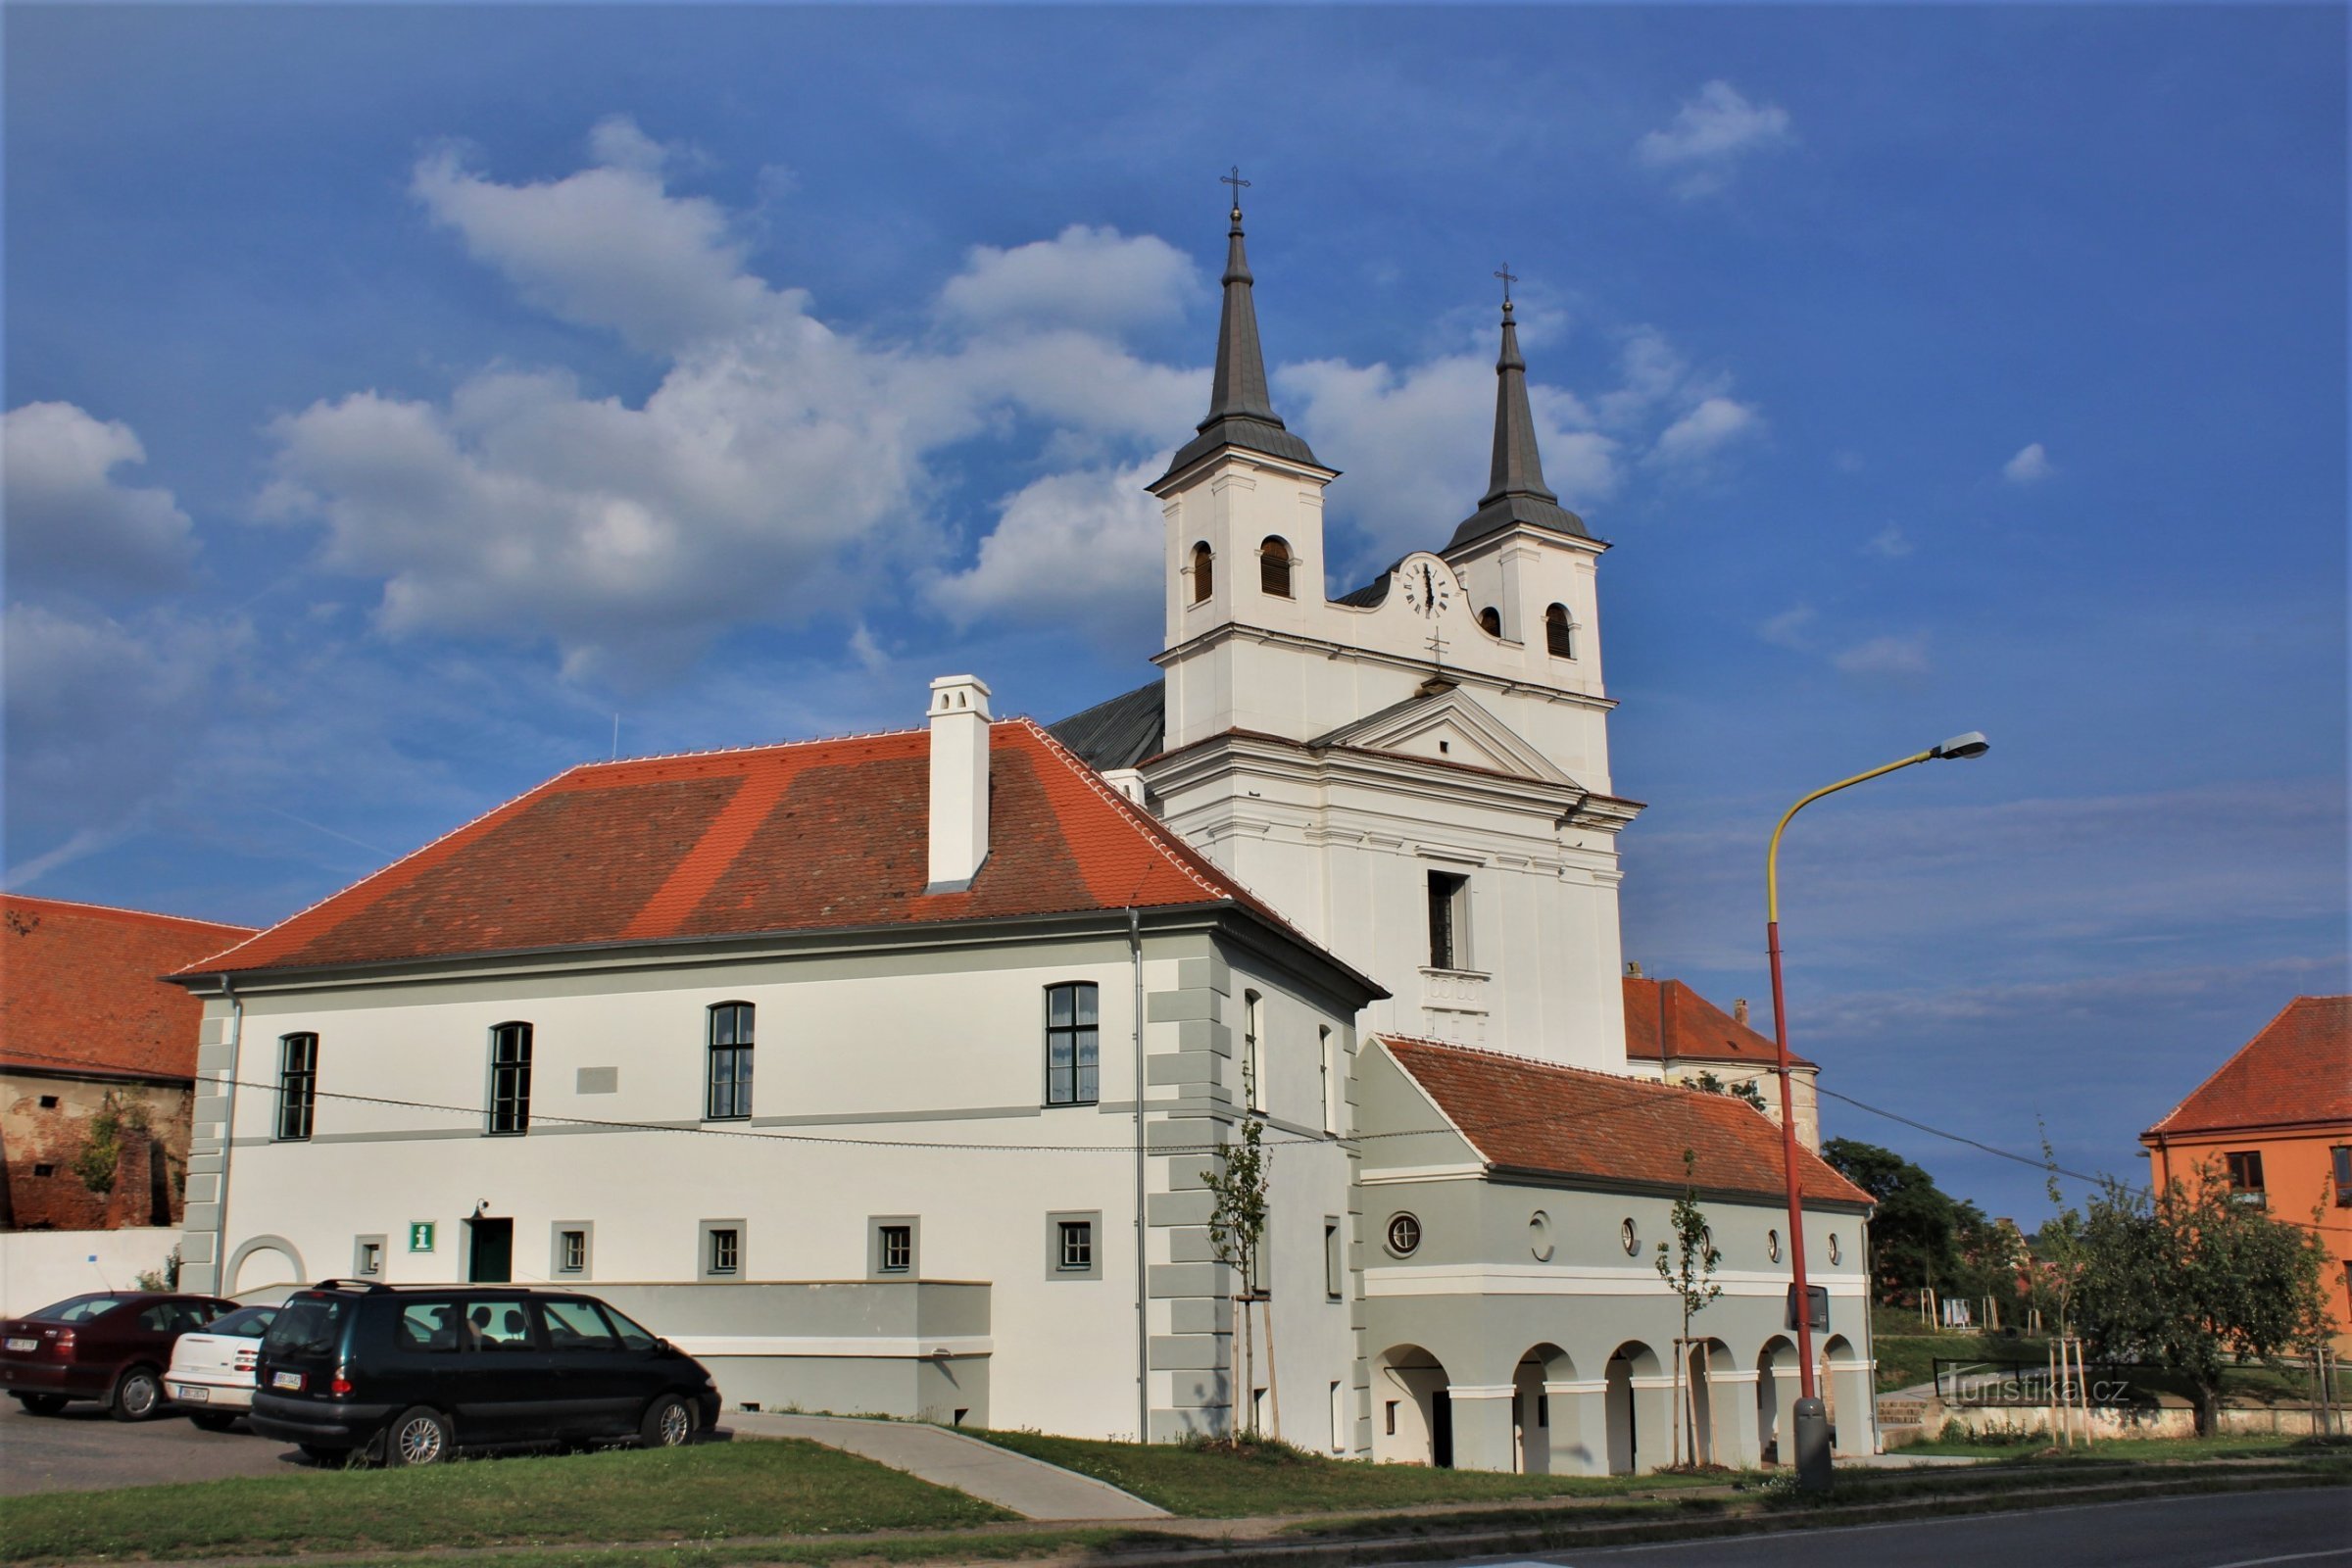 聖三位一体教会の背後にある旧市庁舎の建物の詳細